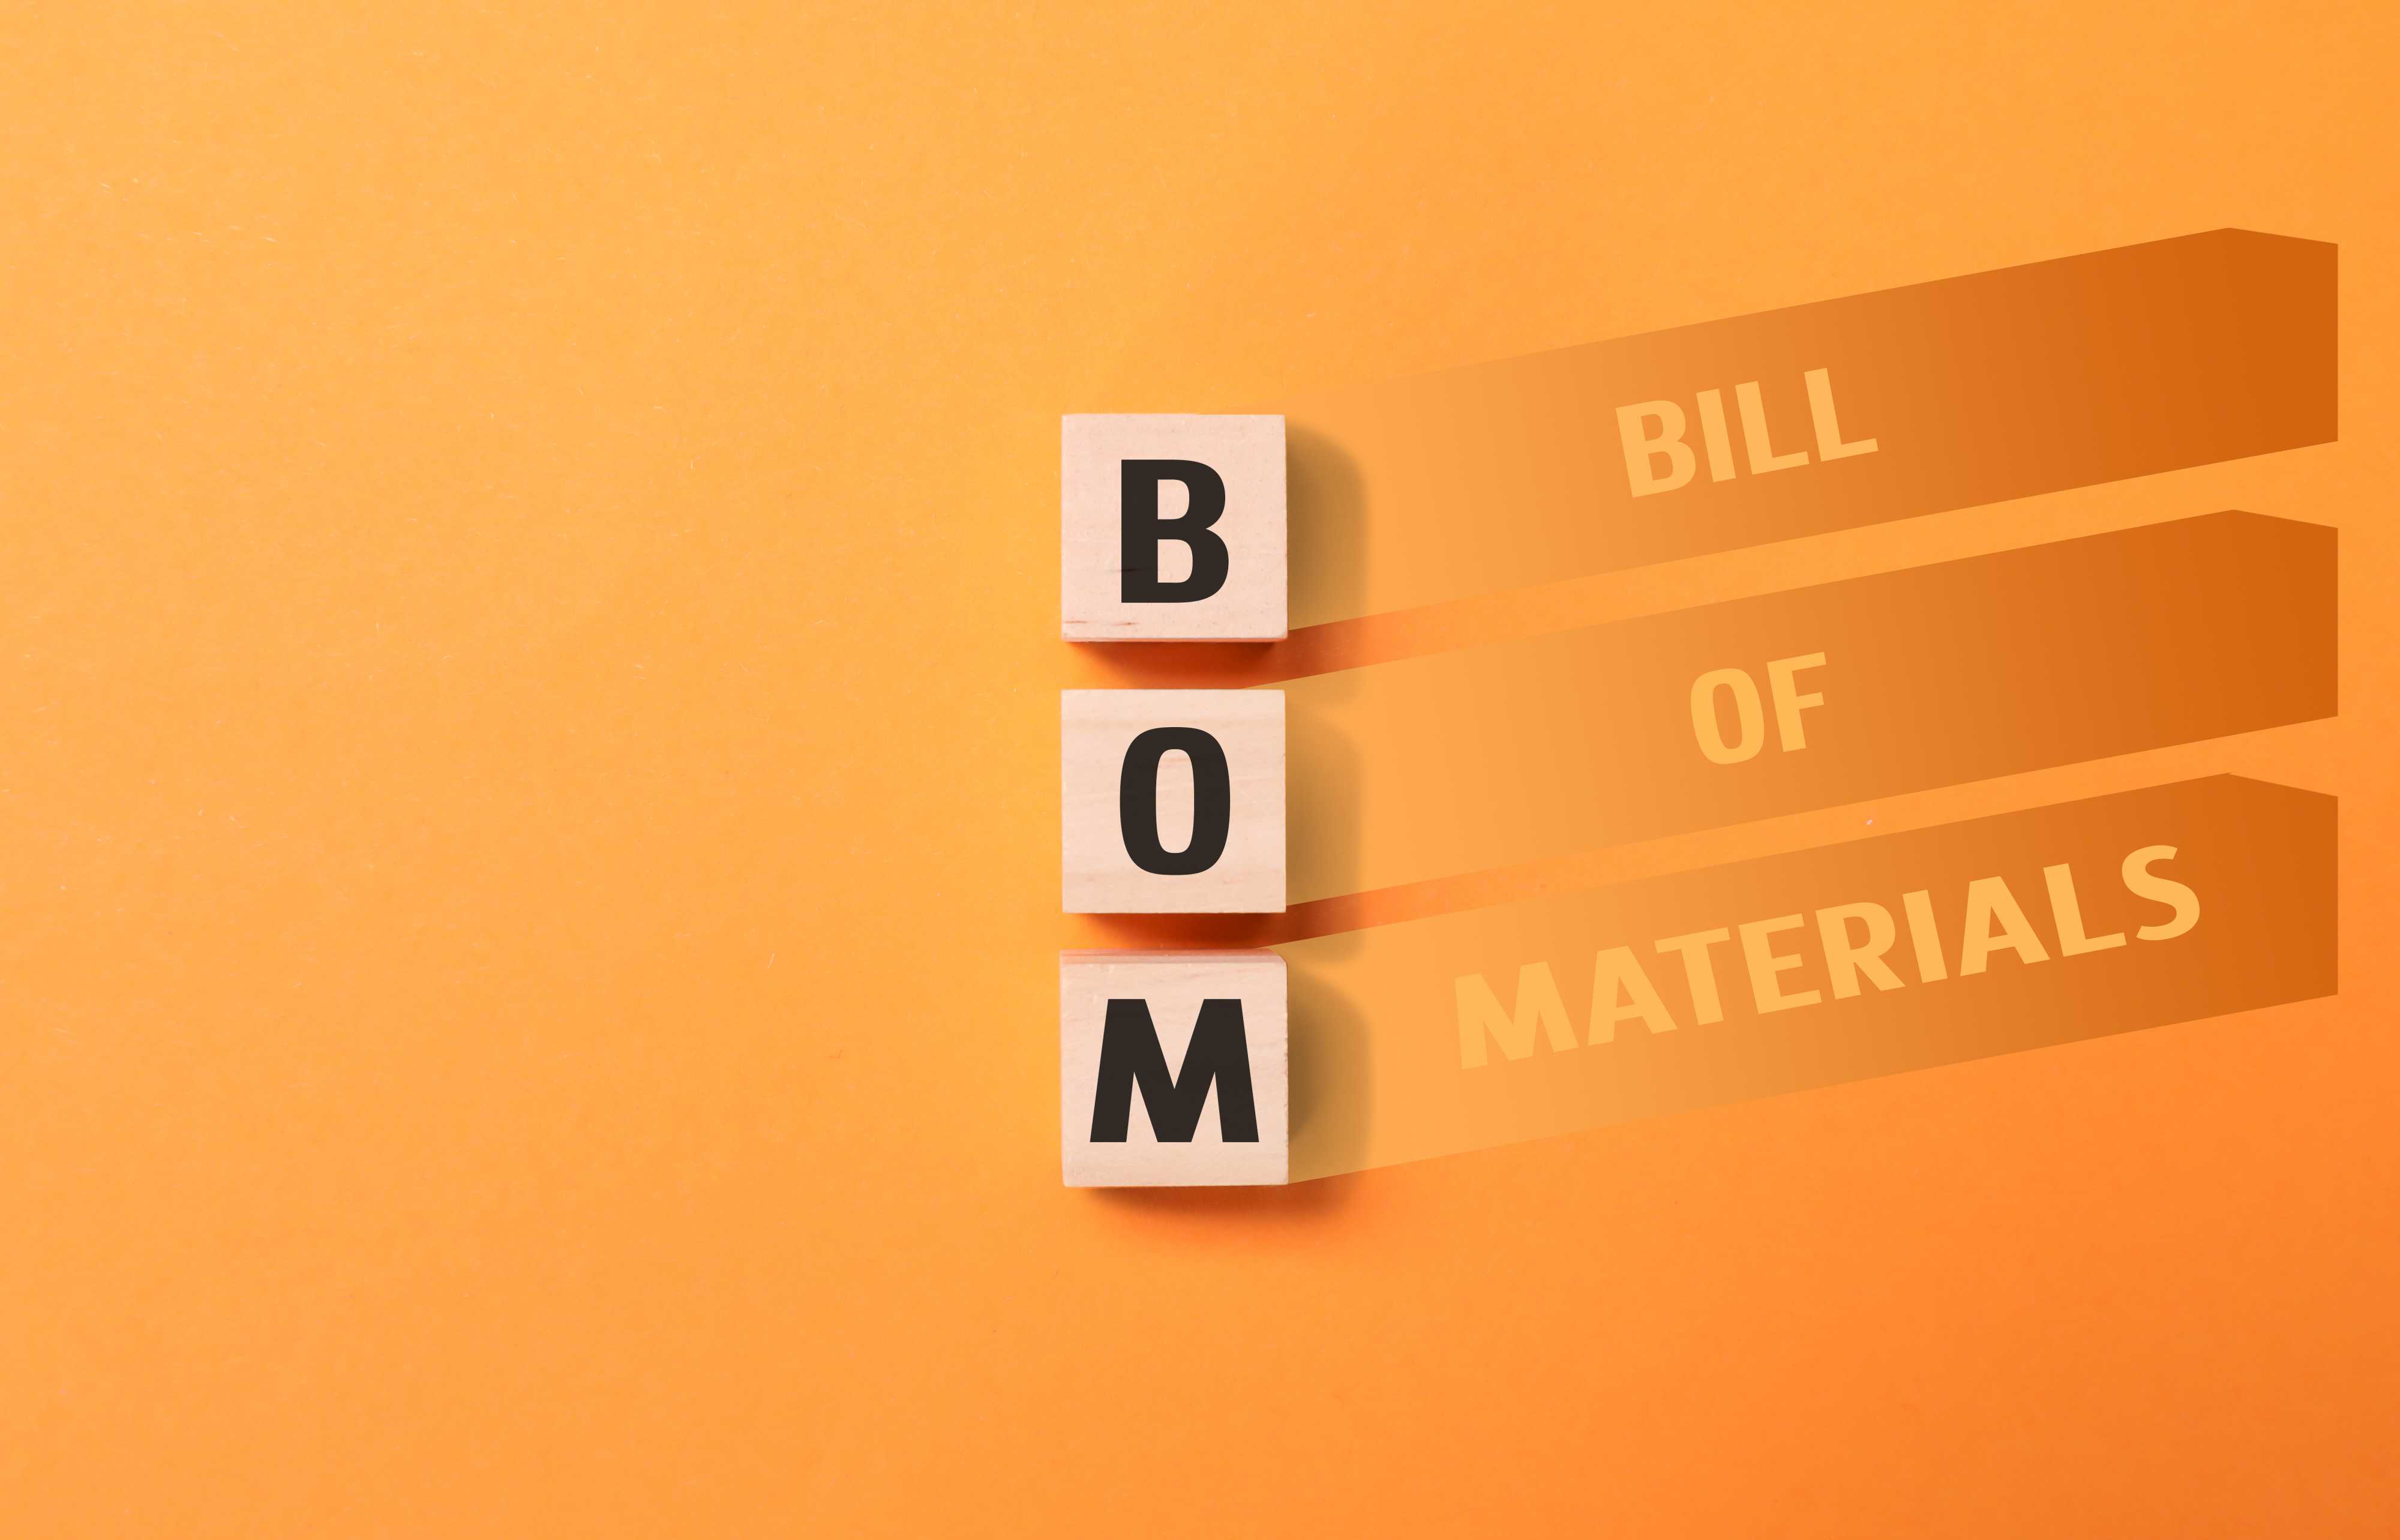 flickr@Jernej Furman - bill of materials on orange background